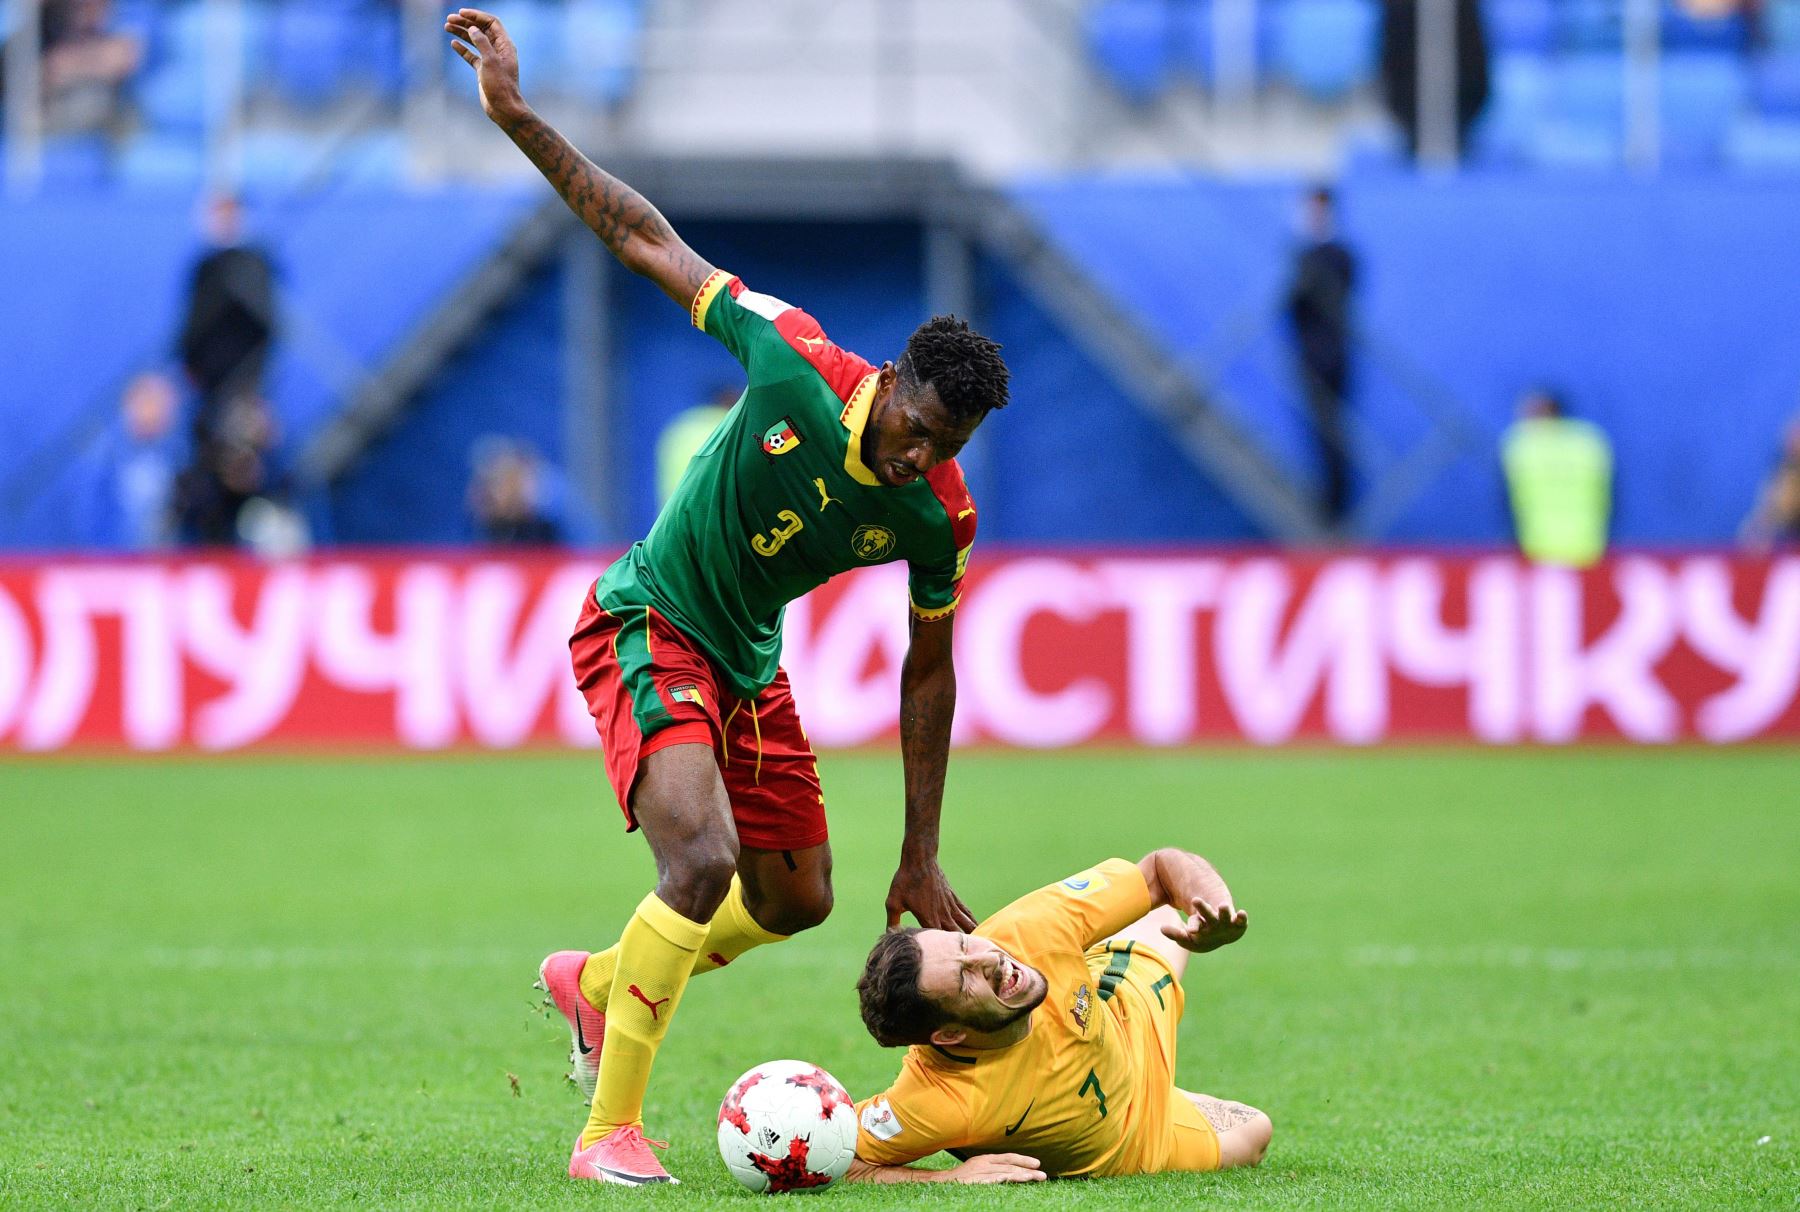 La selecciones de Camerún y Australia empataron a un gol (1-1) por la Copa de las Confederaciones en Rusia. Foto: AFP